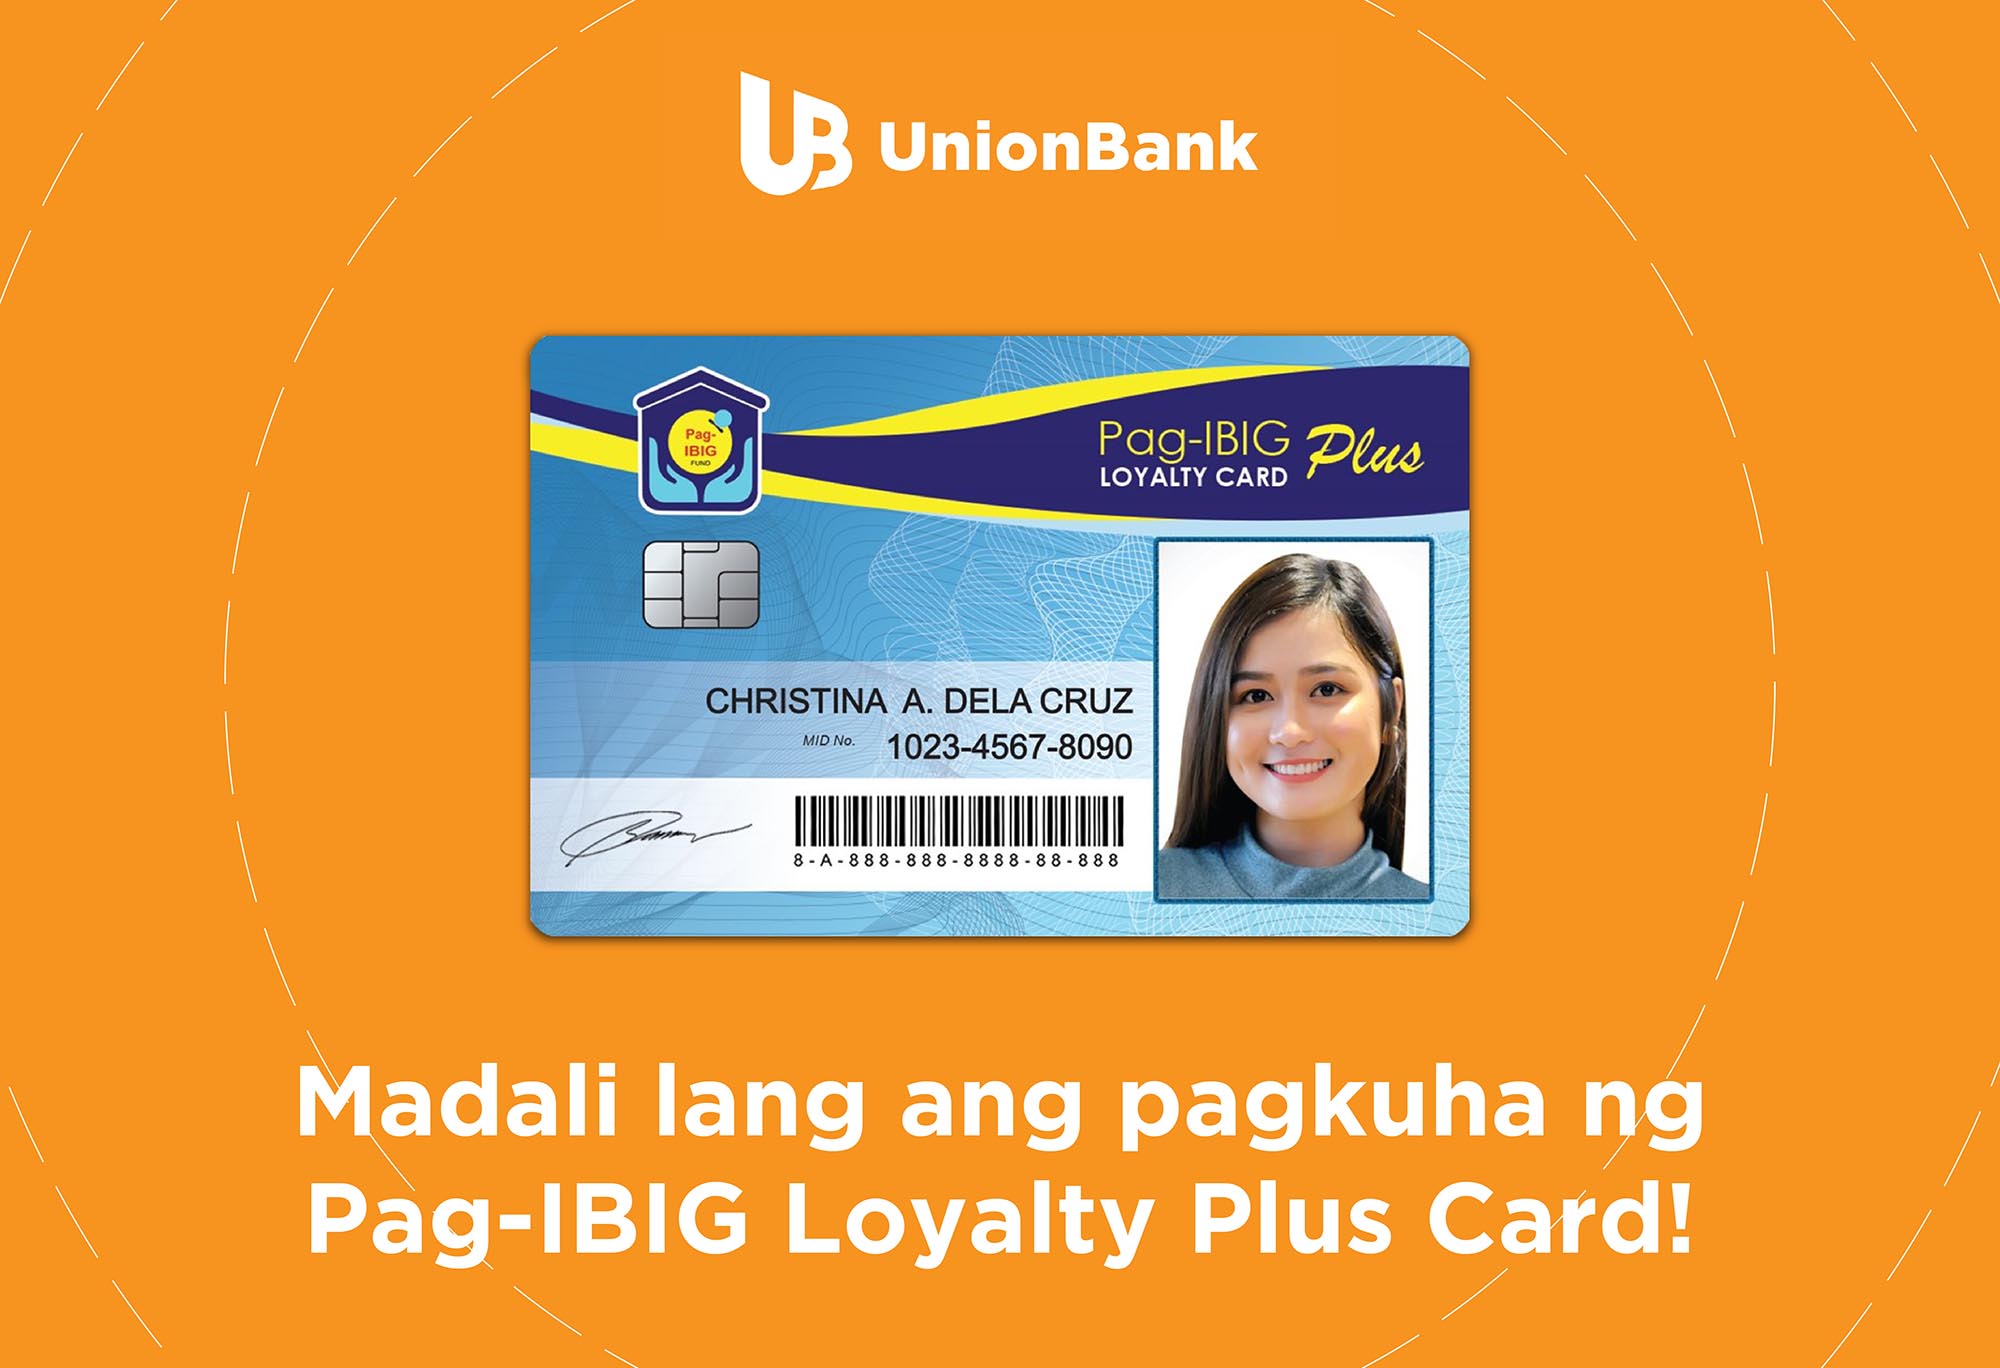 Pag-IBIG Fund, UnionBank reach 1 Million Customers through Loyalty Card Plus